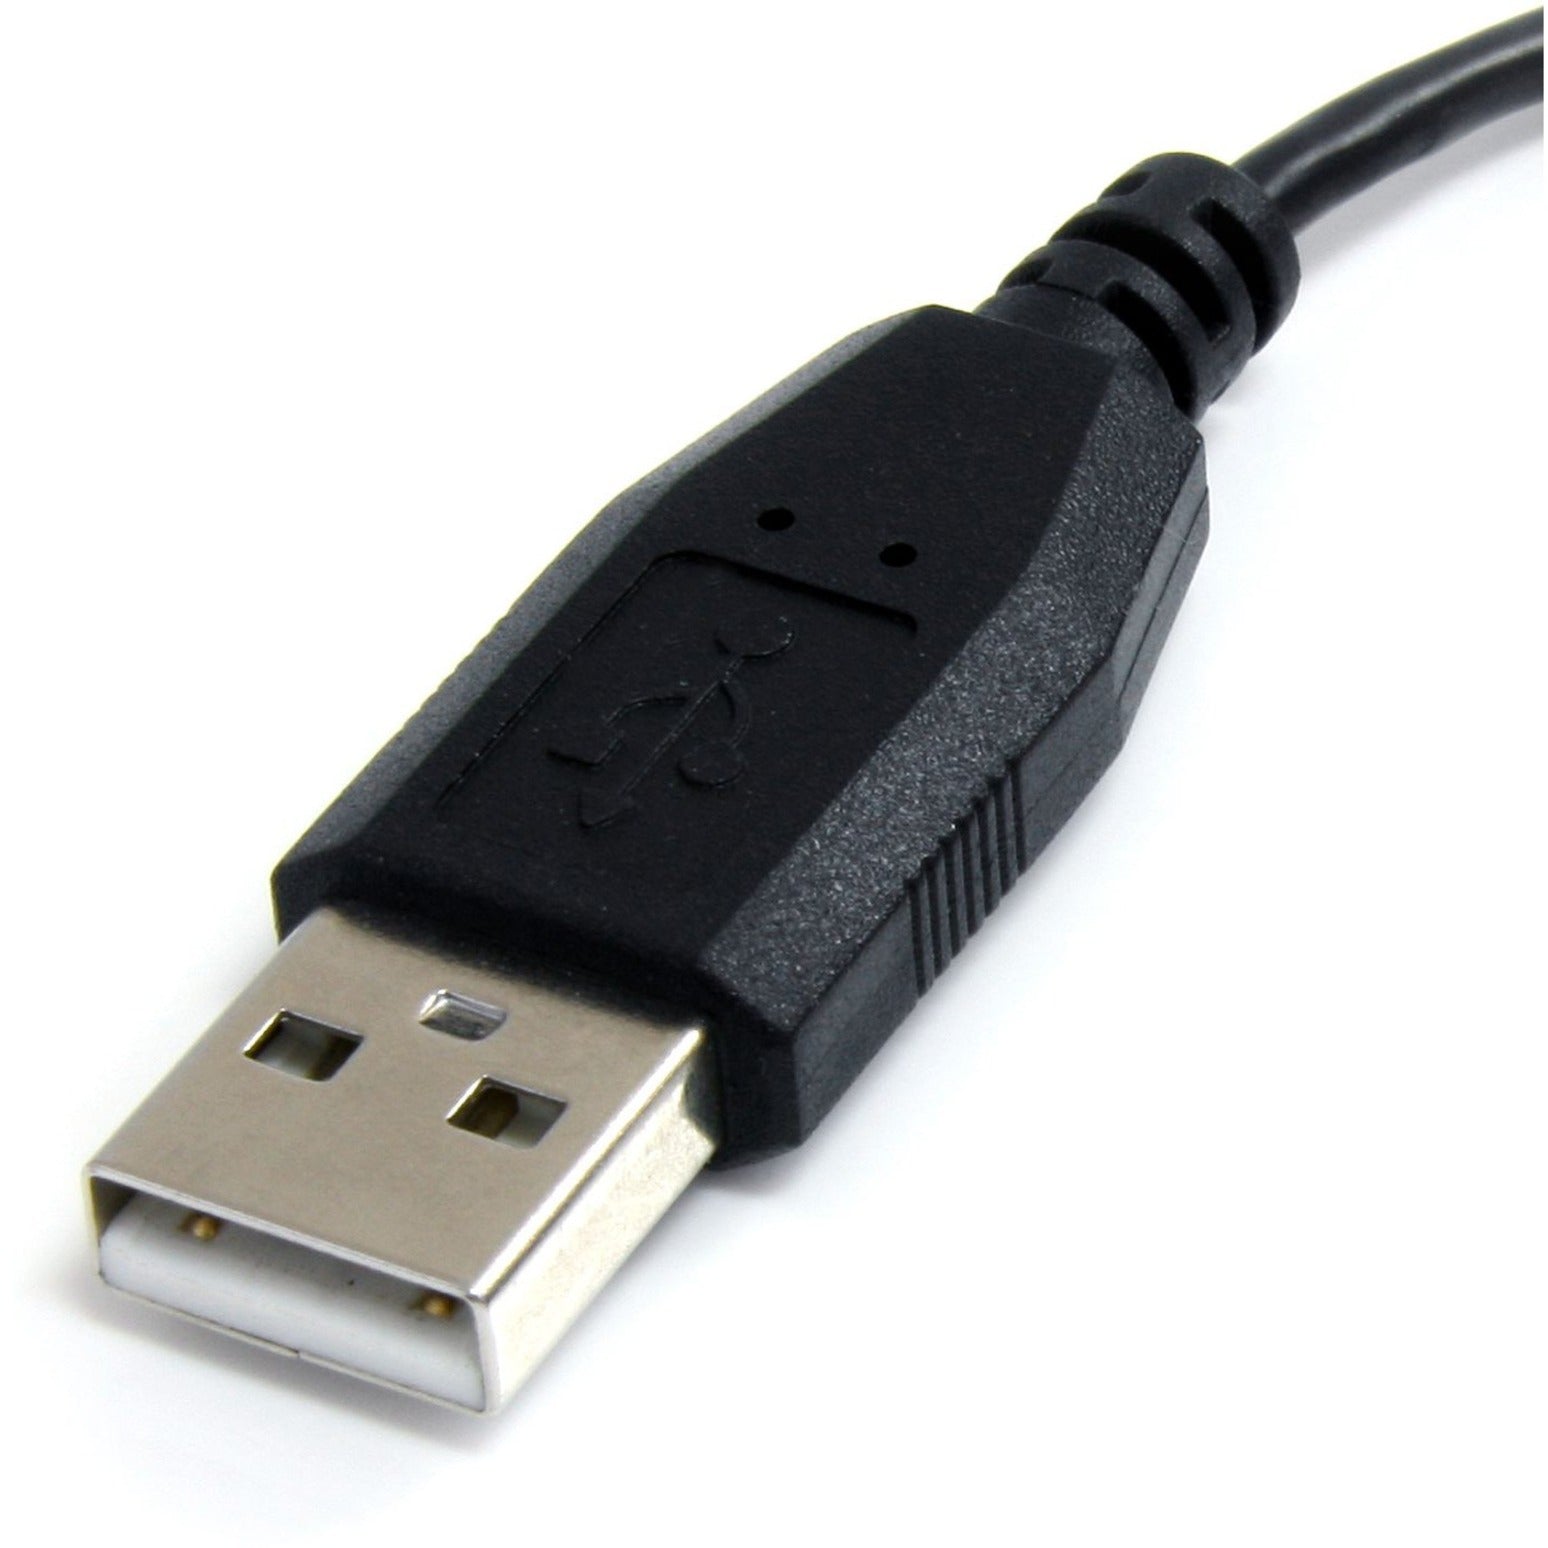 كابل USB صغير 6 قدم - A إلى زاوية يسارية صغيرة B، شحن، إغاثة من التوتر، مصبوب StarTech.com